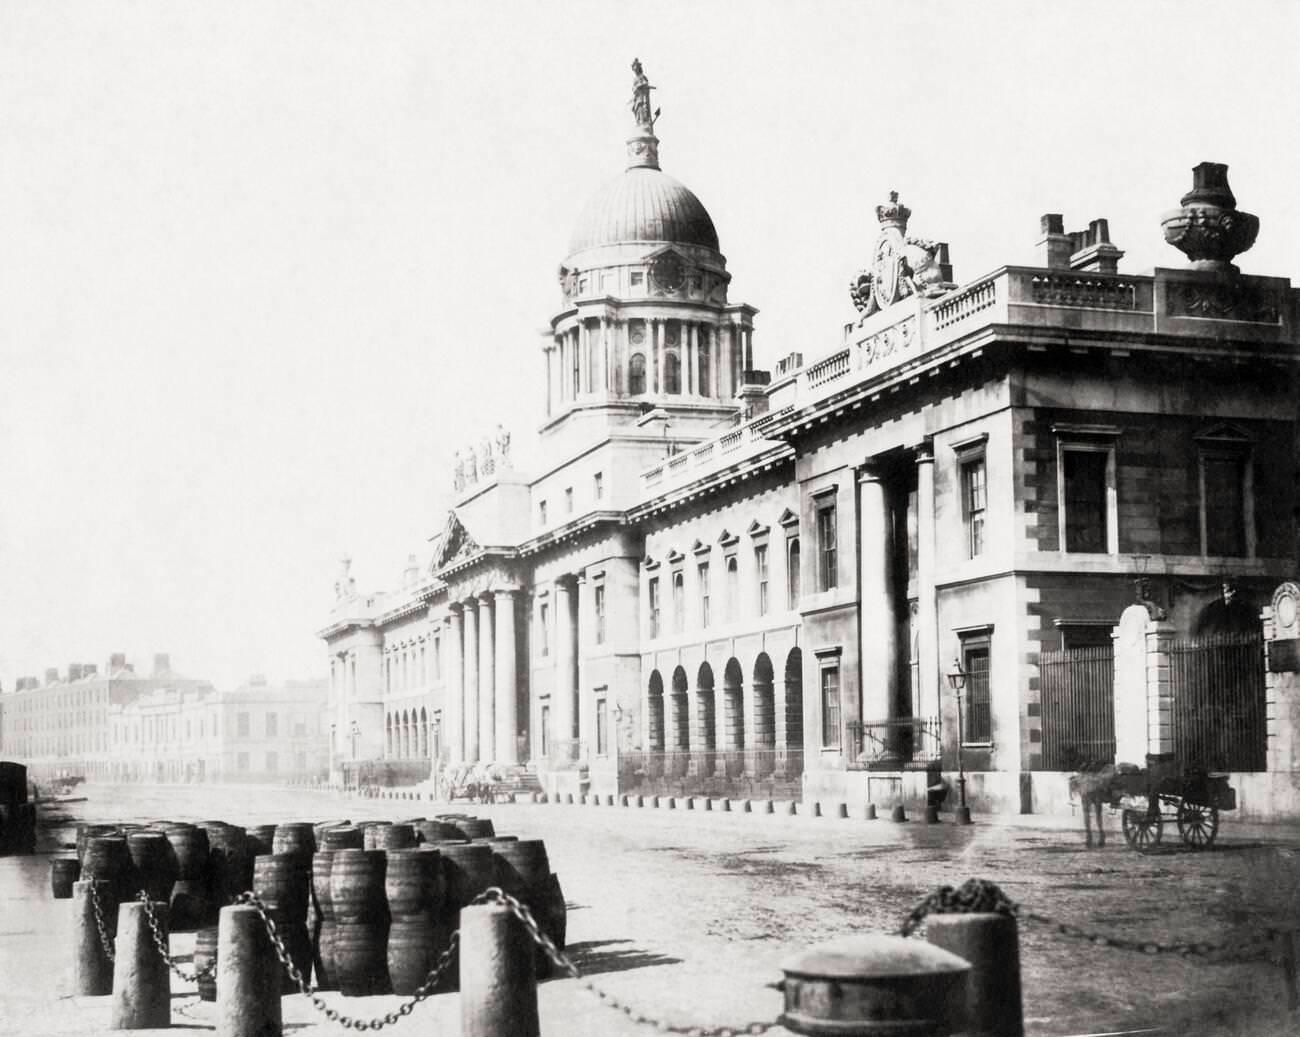 Customs House, Dublin, Ireland, 1890s